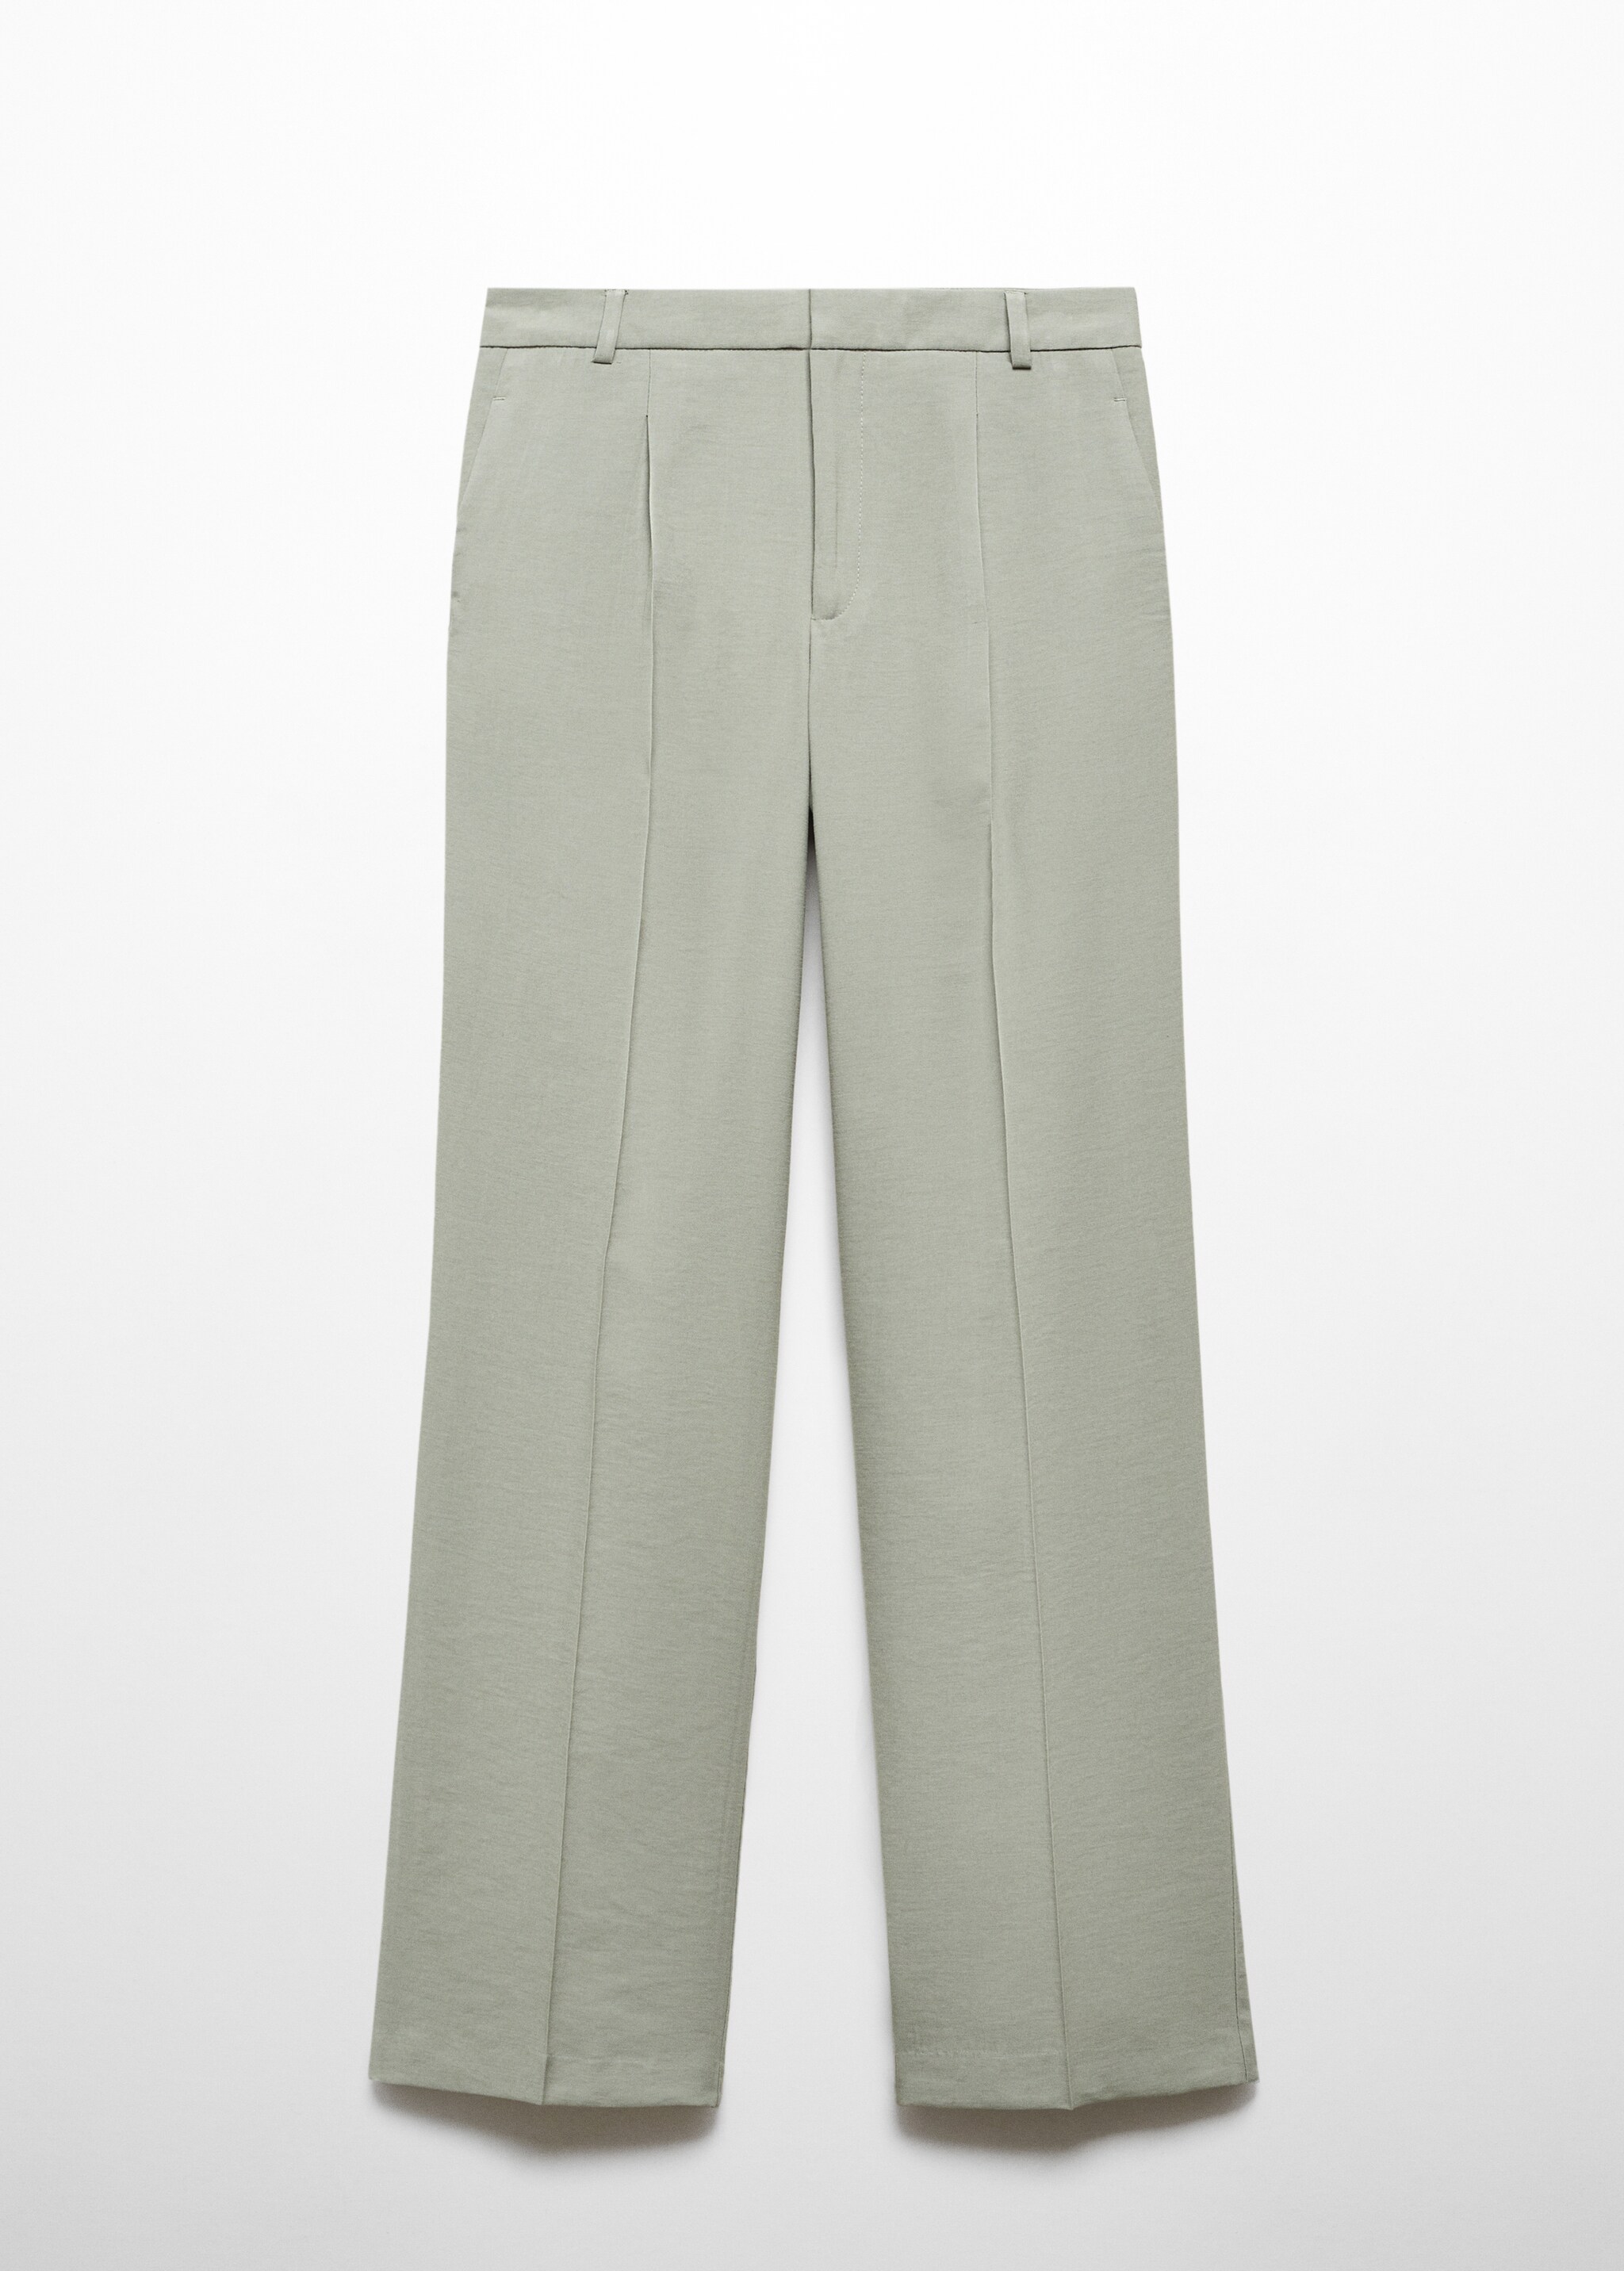 Pilili düz kesim pantolon  - Modelsiz ürün